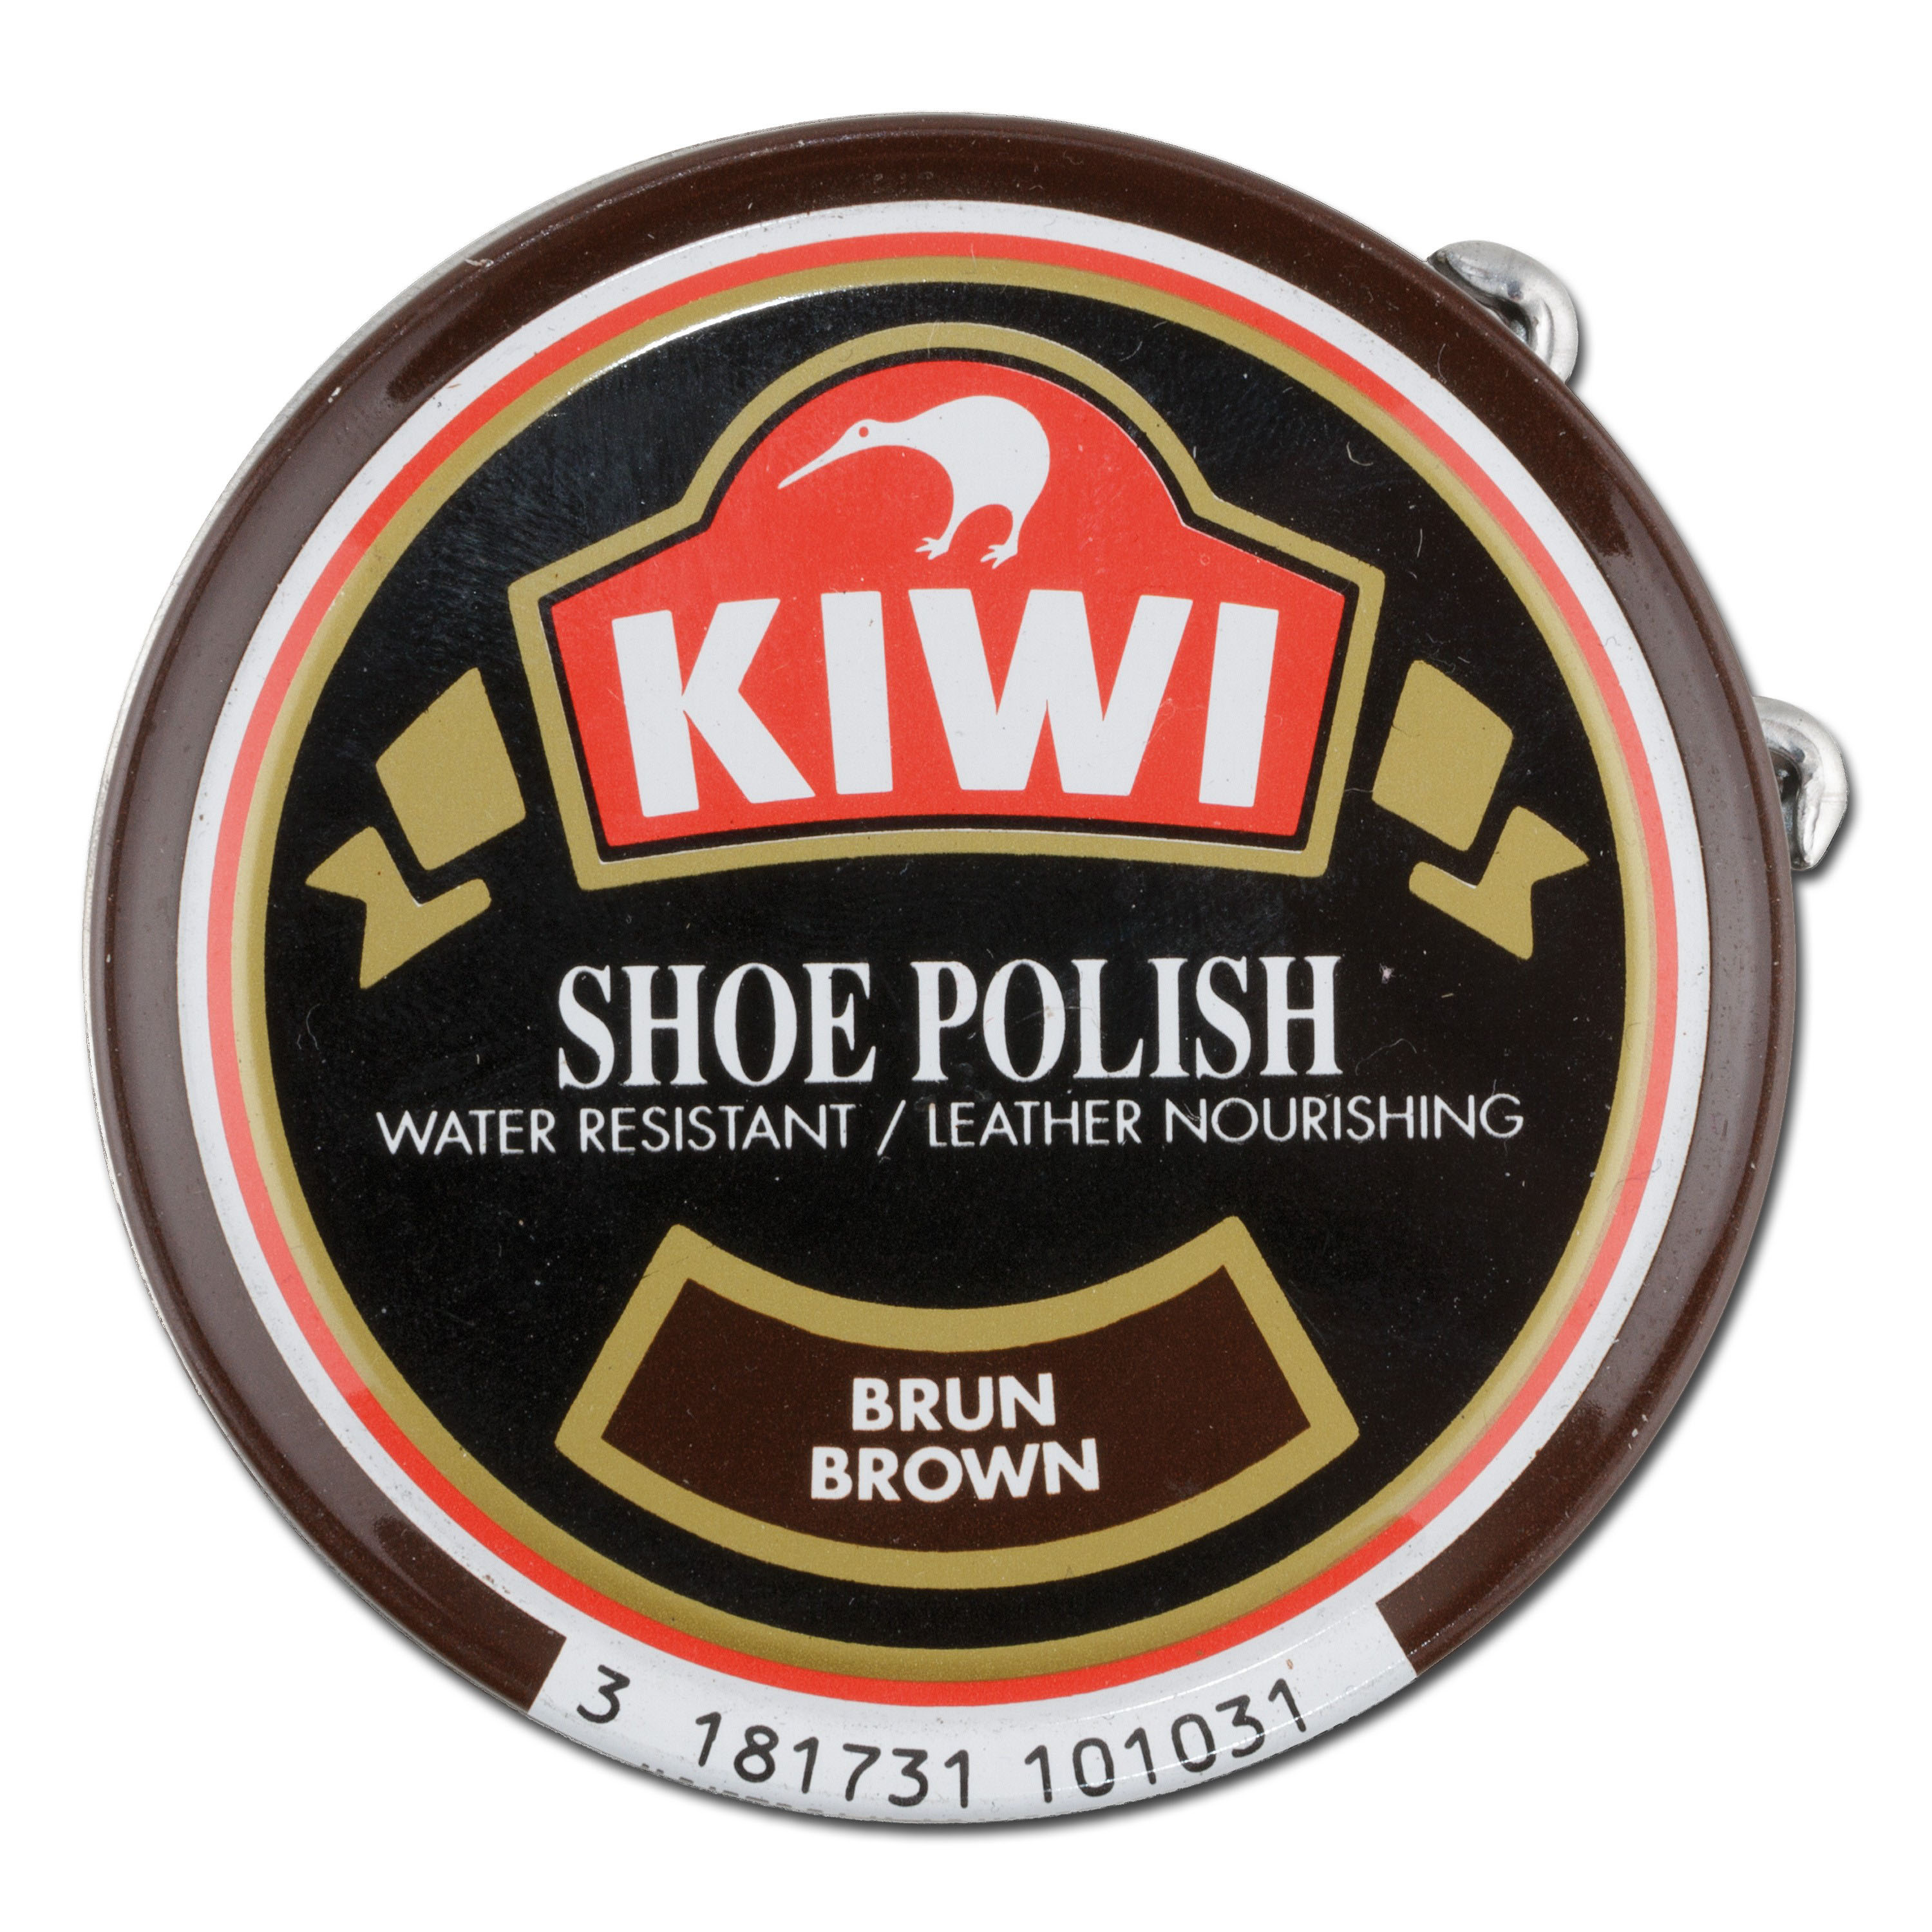 KIWI Shoe Polish 50 ml brown | KIWI Shoe Polish 50 ml brown | Shoe Care ...